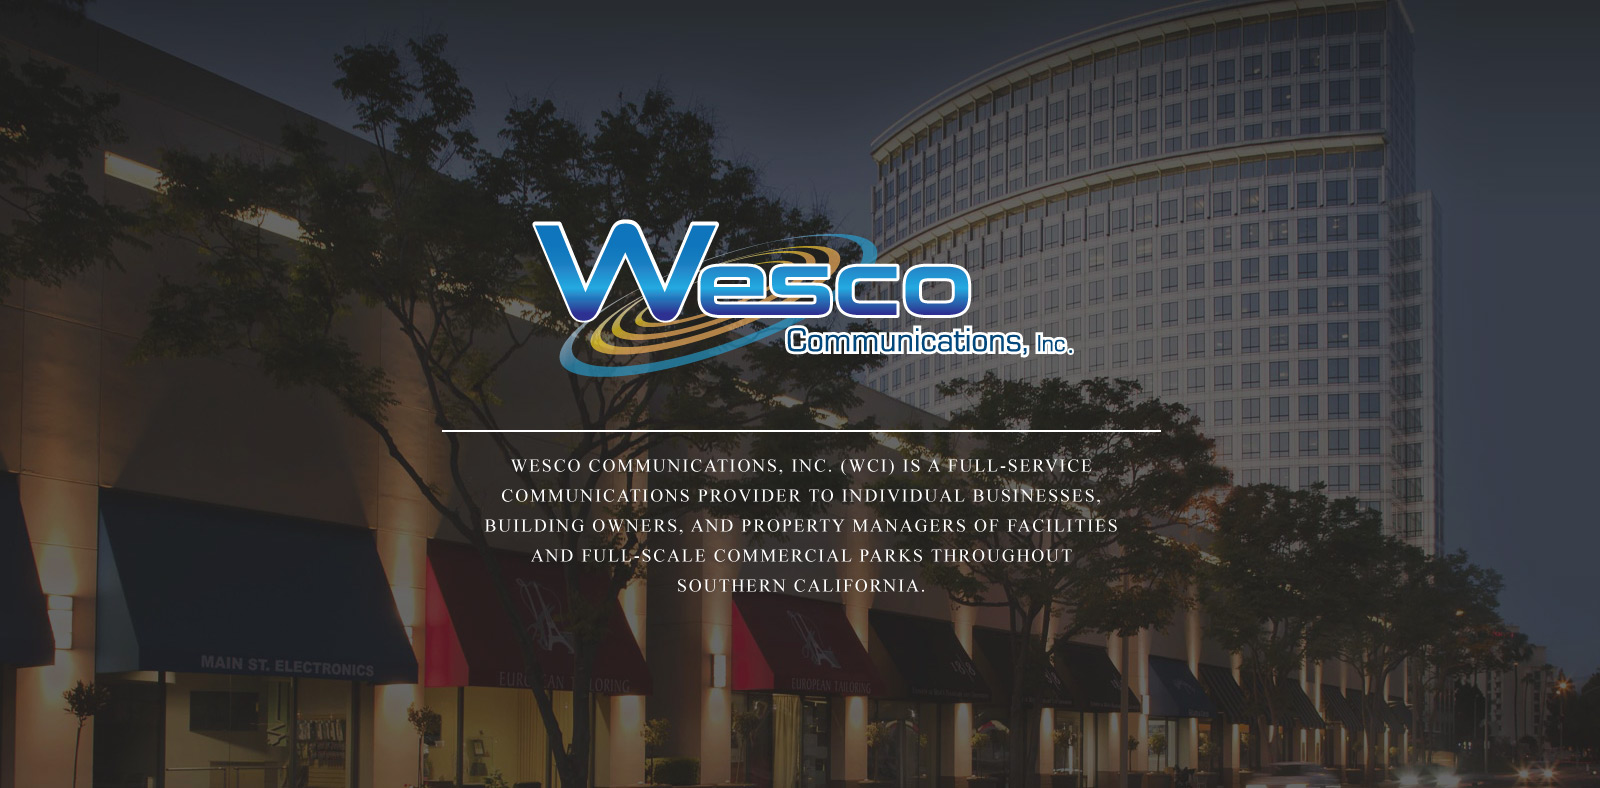  Wesco Communications, Inc.